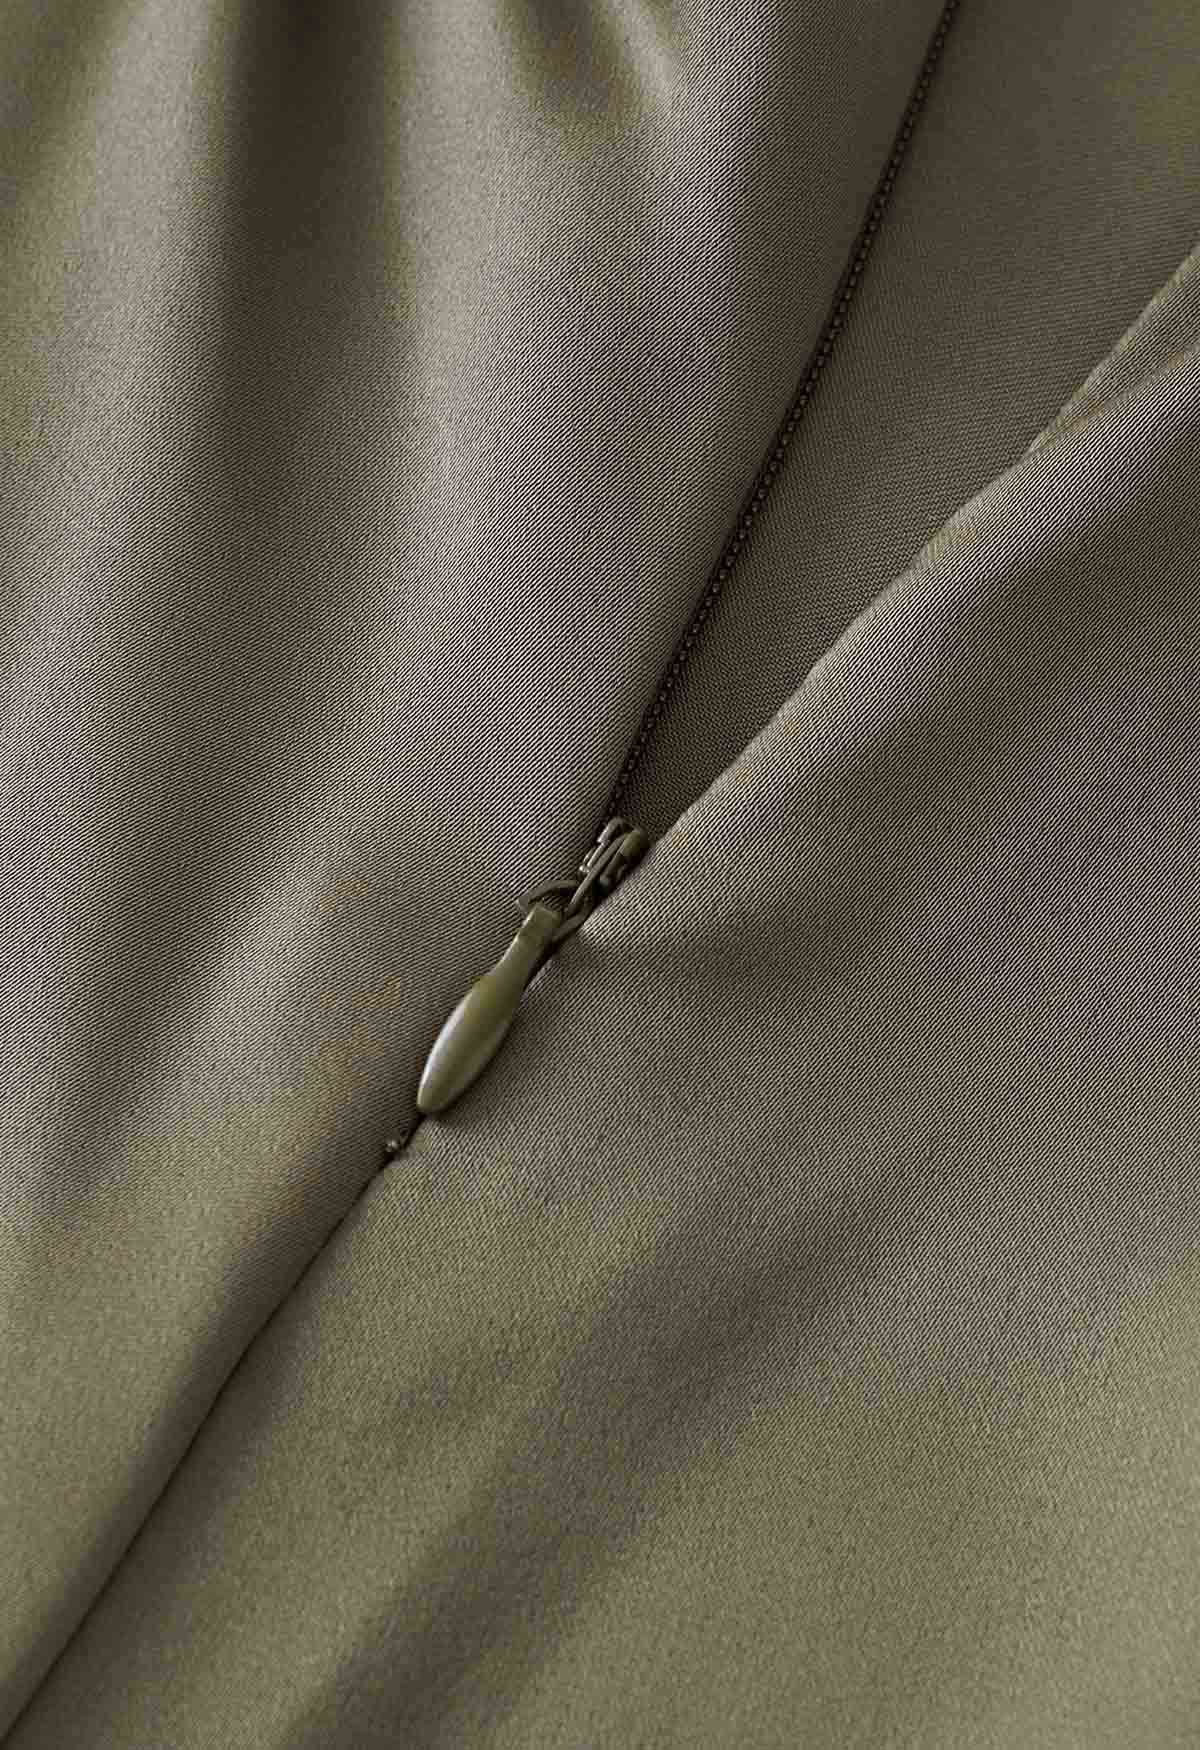 Cami-Kleid aus gedrehtem Satin mit herzförmigem Ausschnitt in Olivgrün